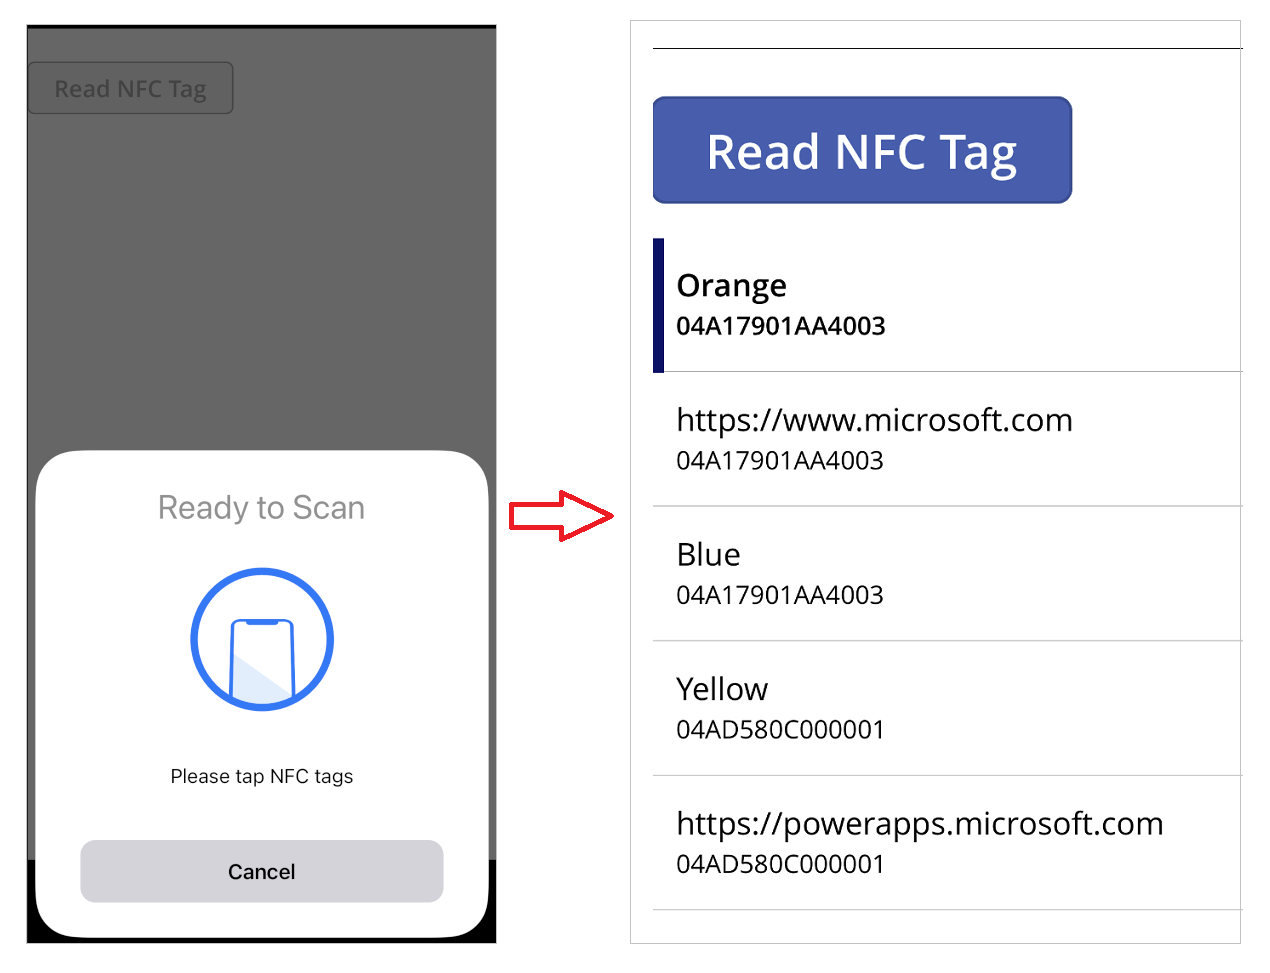 Rakendus mobiilseadmes koos NFC-sildi lugemise näite ja galeriis oleva tulemusega.